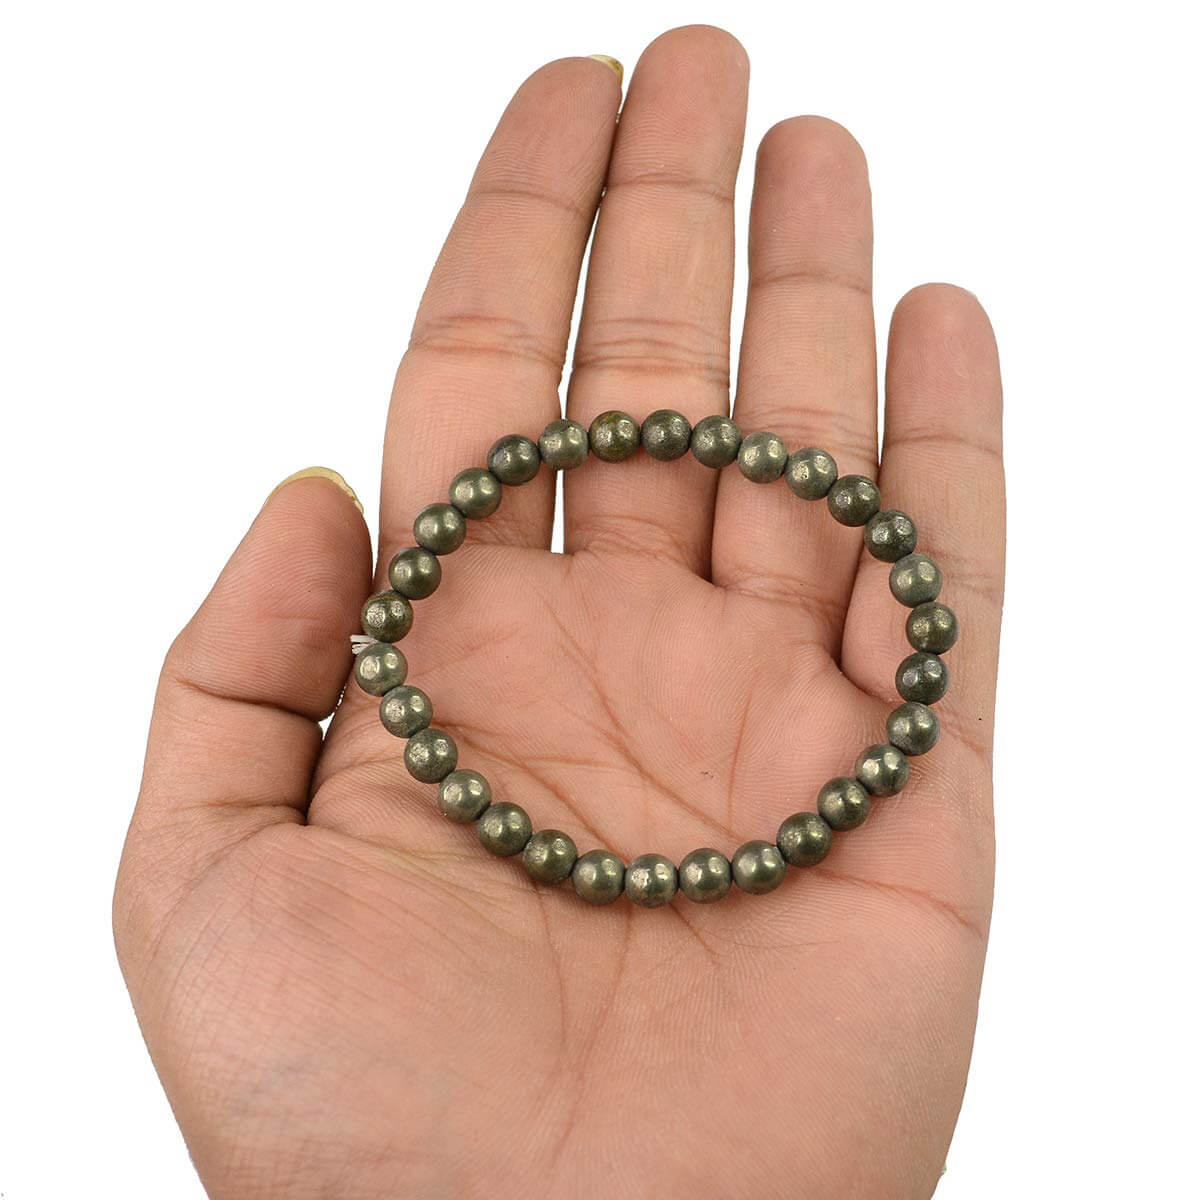 Pyrite Crystal Bracelet for Reiki Healing 6 MM